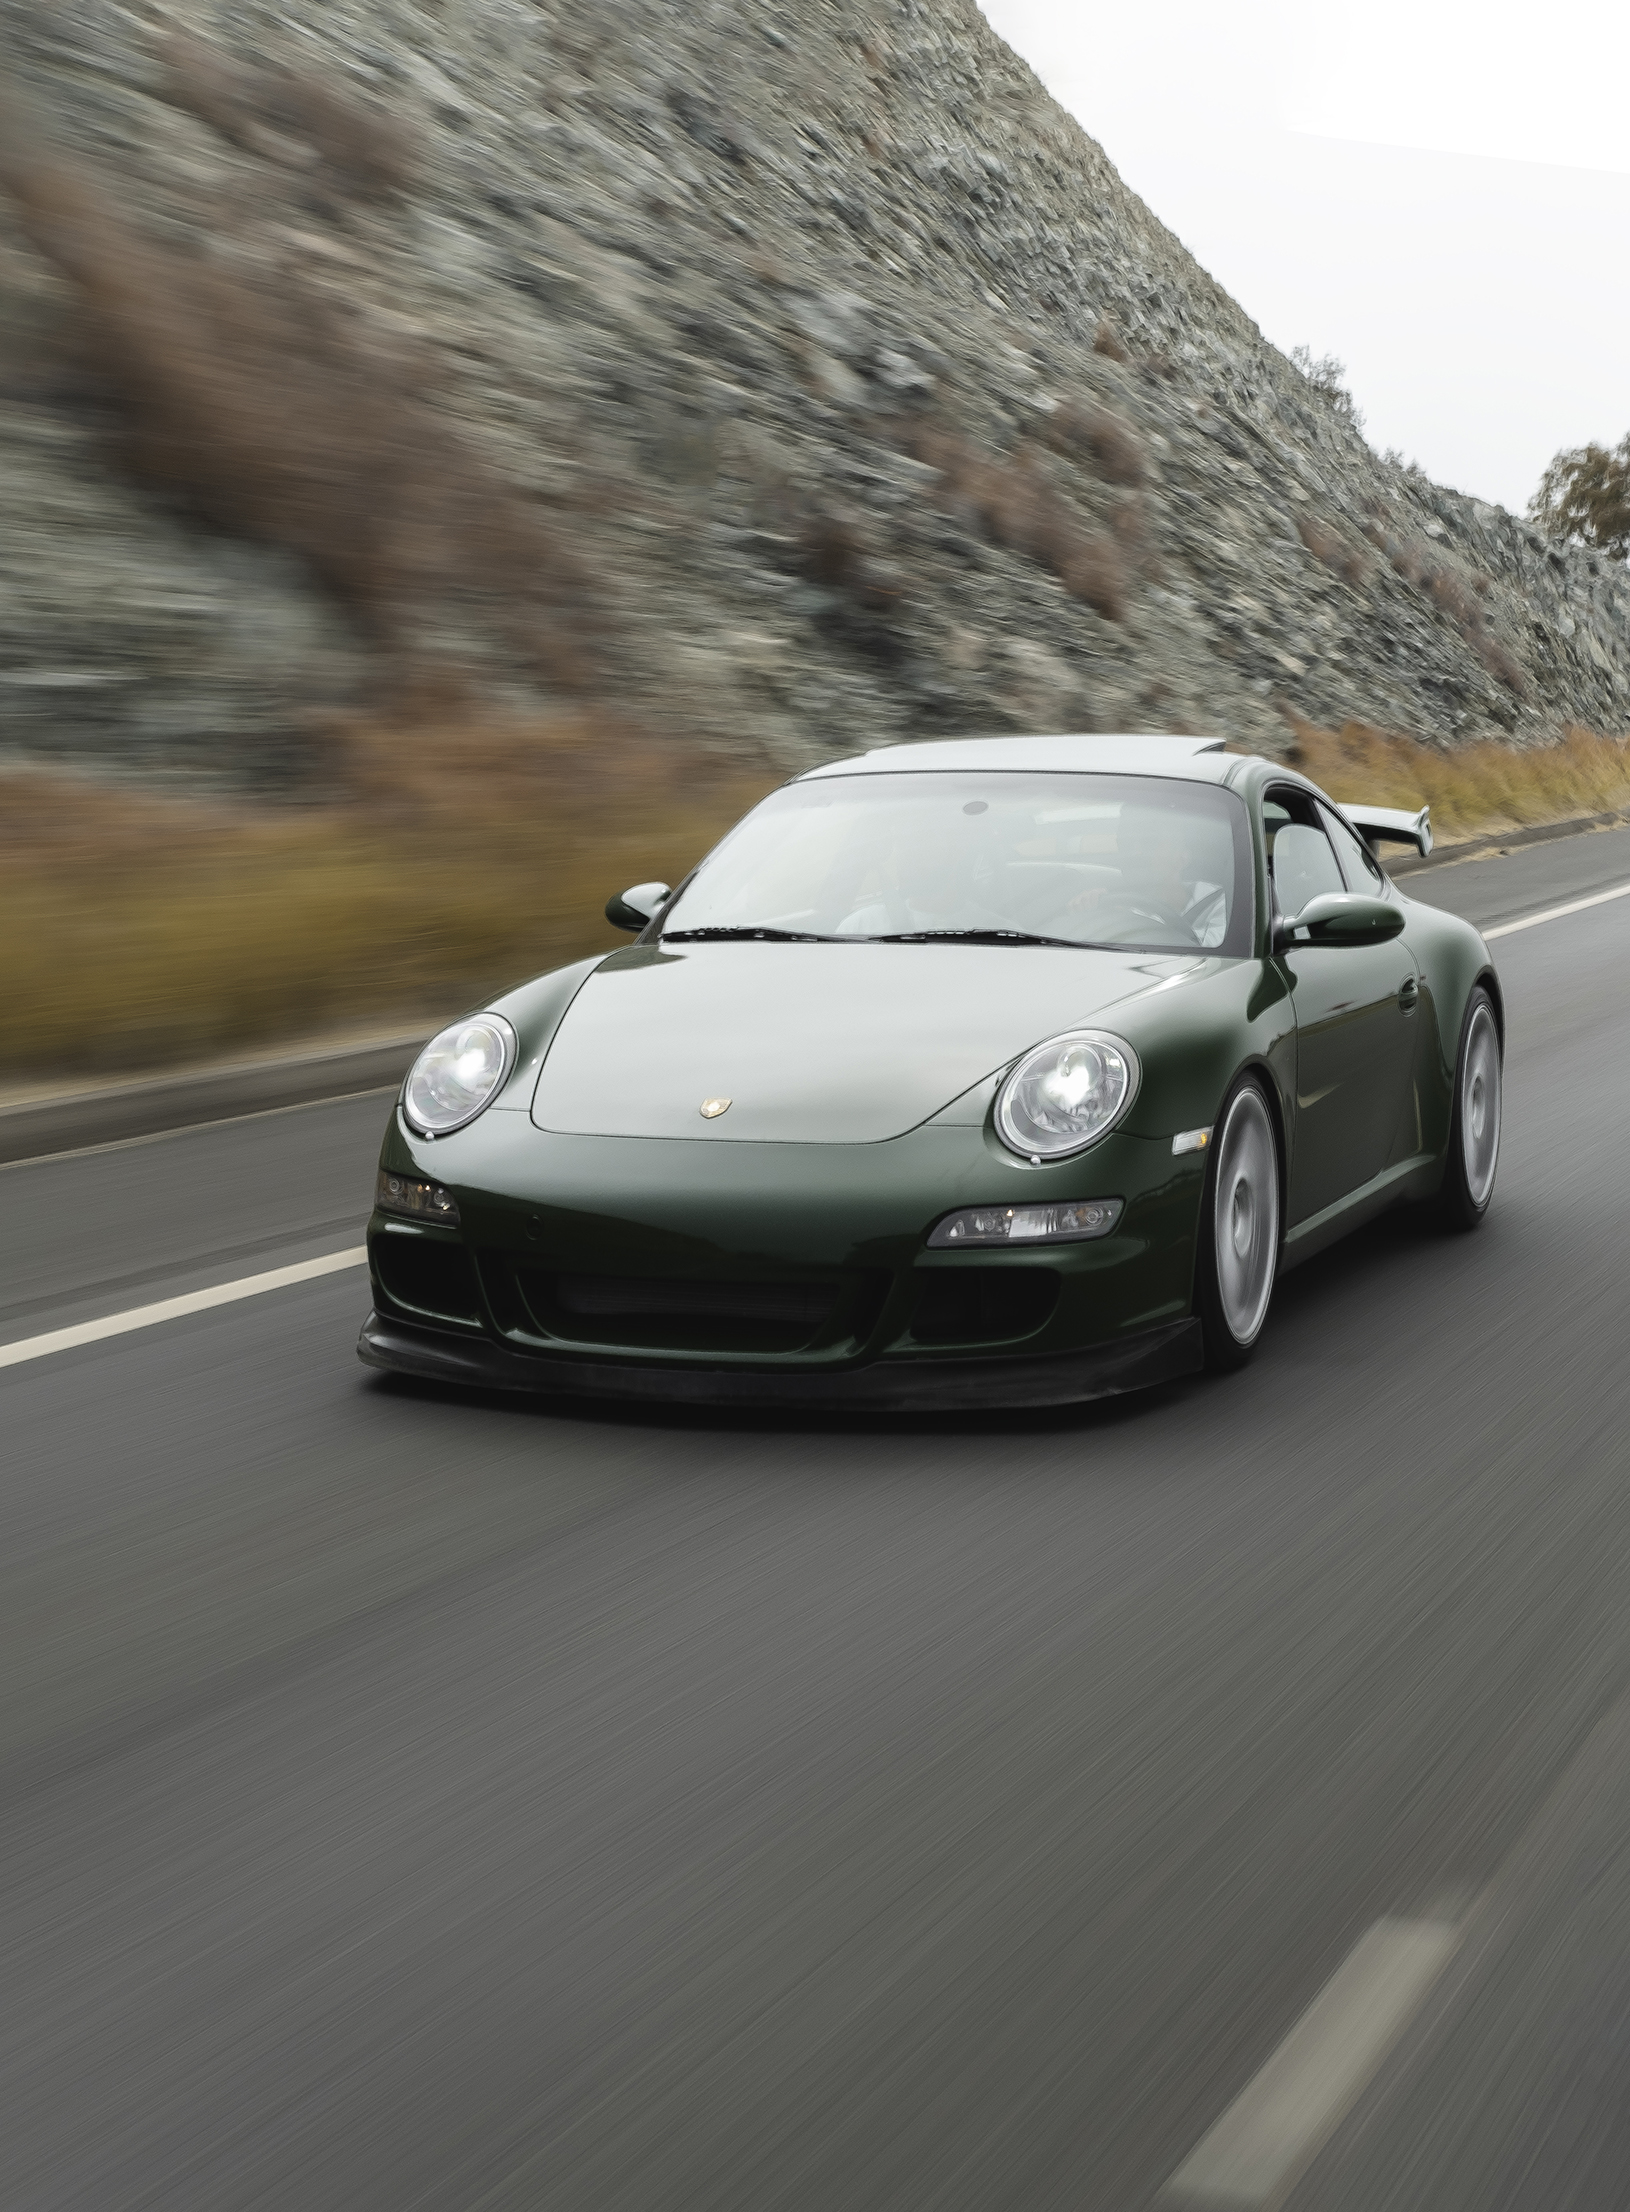 Dark green Porsche 911 (type 997.1) on road